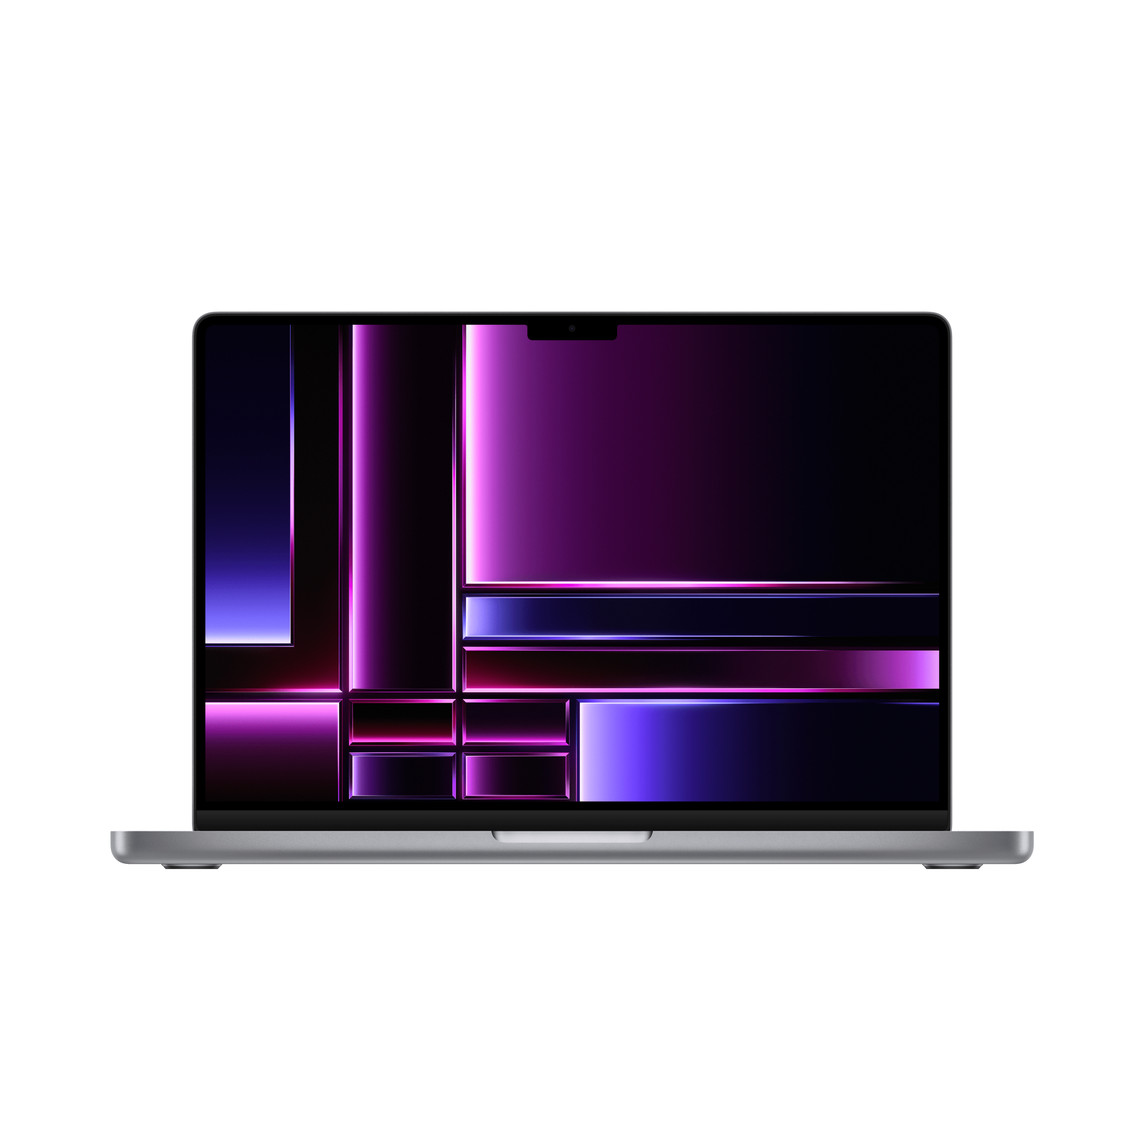 打開的太空灰色 14 吋 MacBook Pro，展示顯示器、纖薄邊框、FaceTime HD 相機、凸出的腳座與圓角設計。